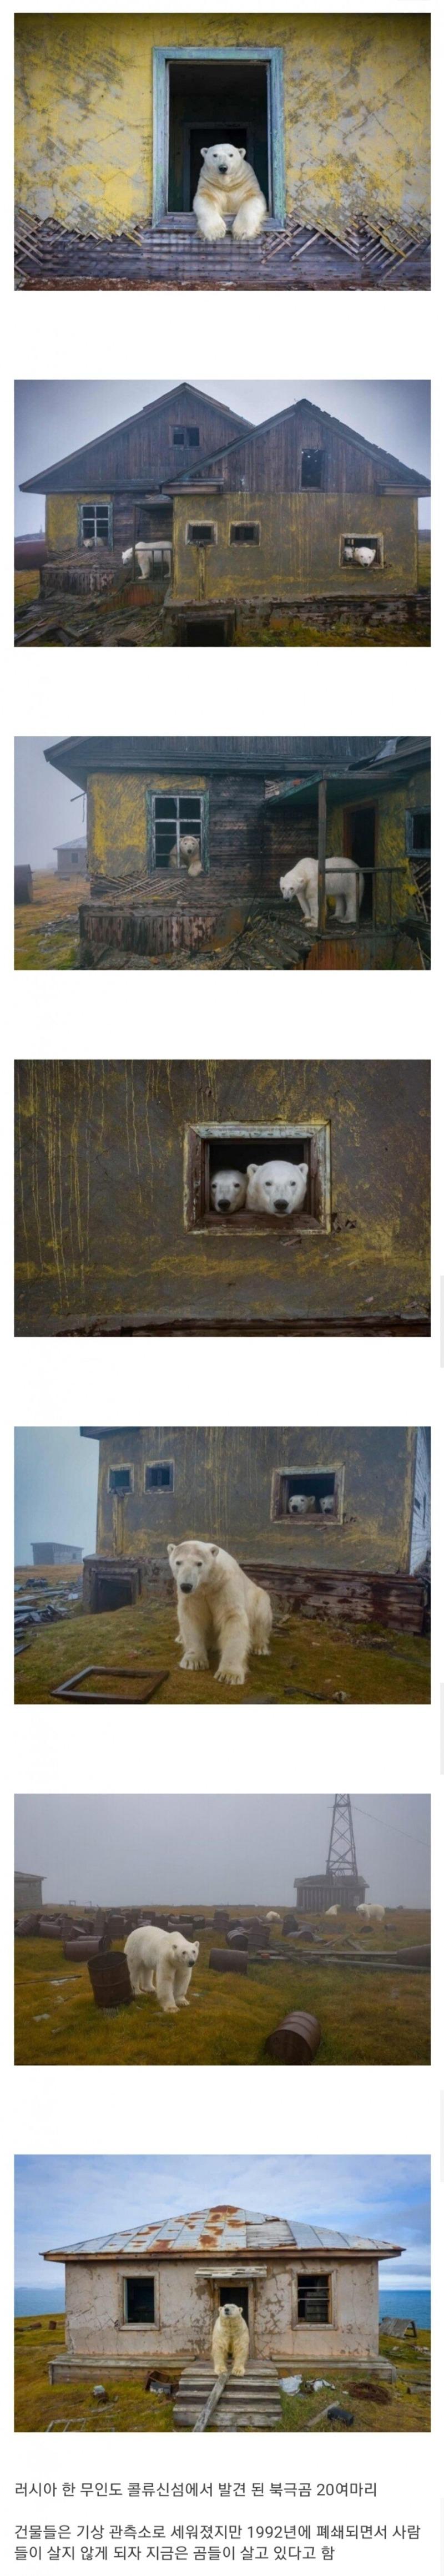 안간이 버린 건물에 살고있는 북극곰.jpg